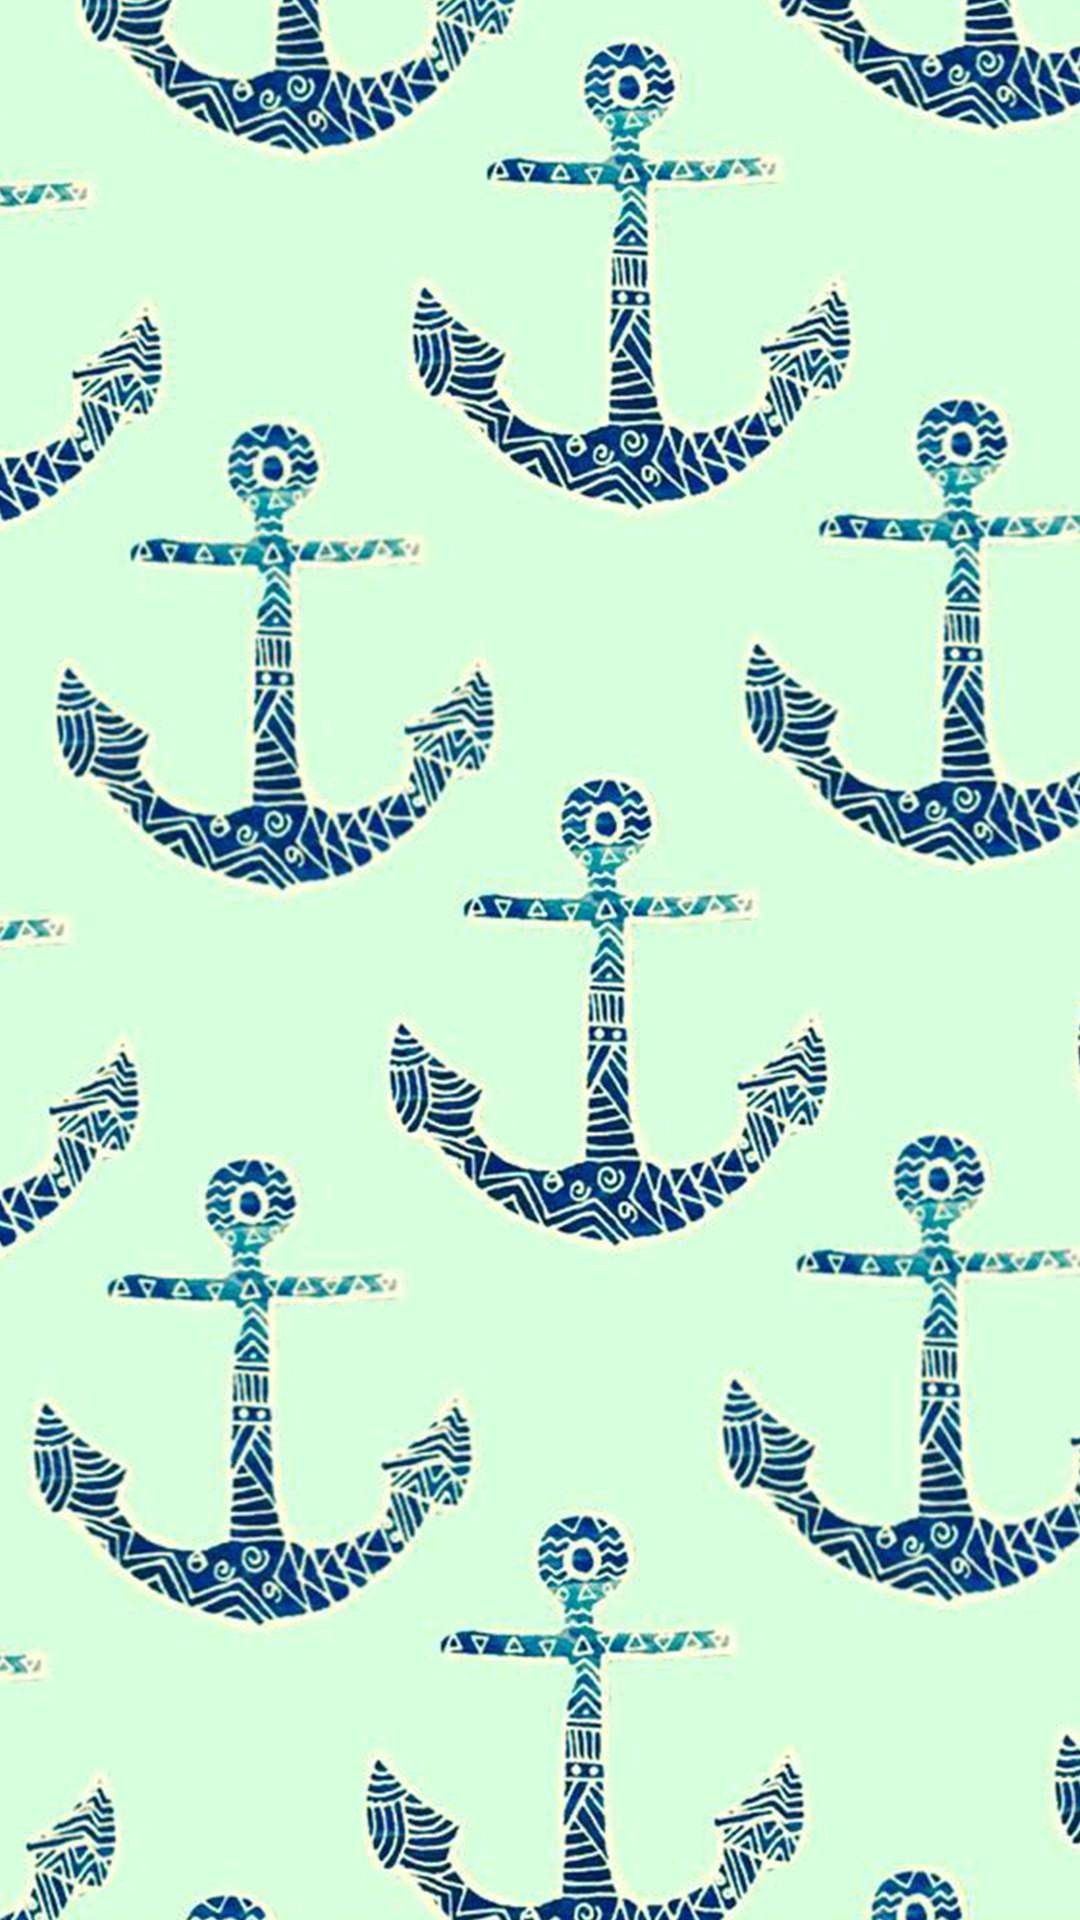 1080x1920 Nautical Wallpaper, Anchor Wallpaper, Kefir, Wallpaper Backgrounds,  Pictures, Anchors, Stuff